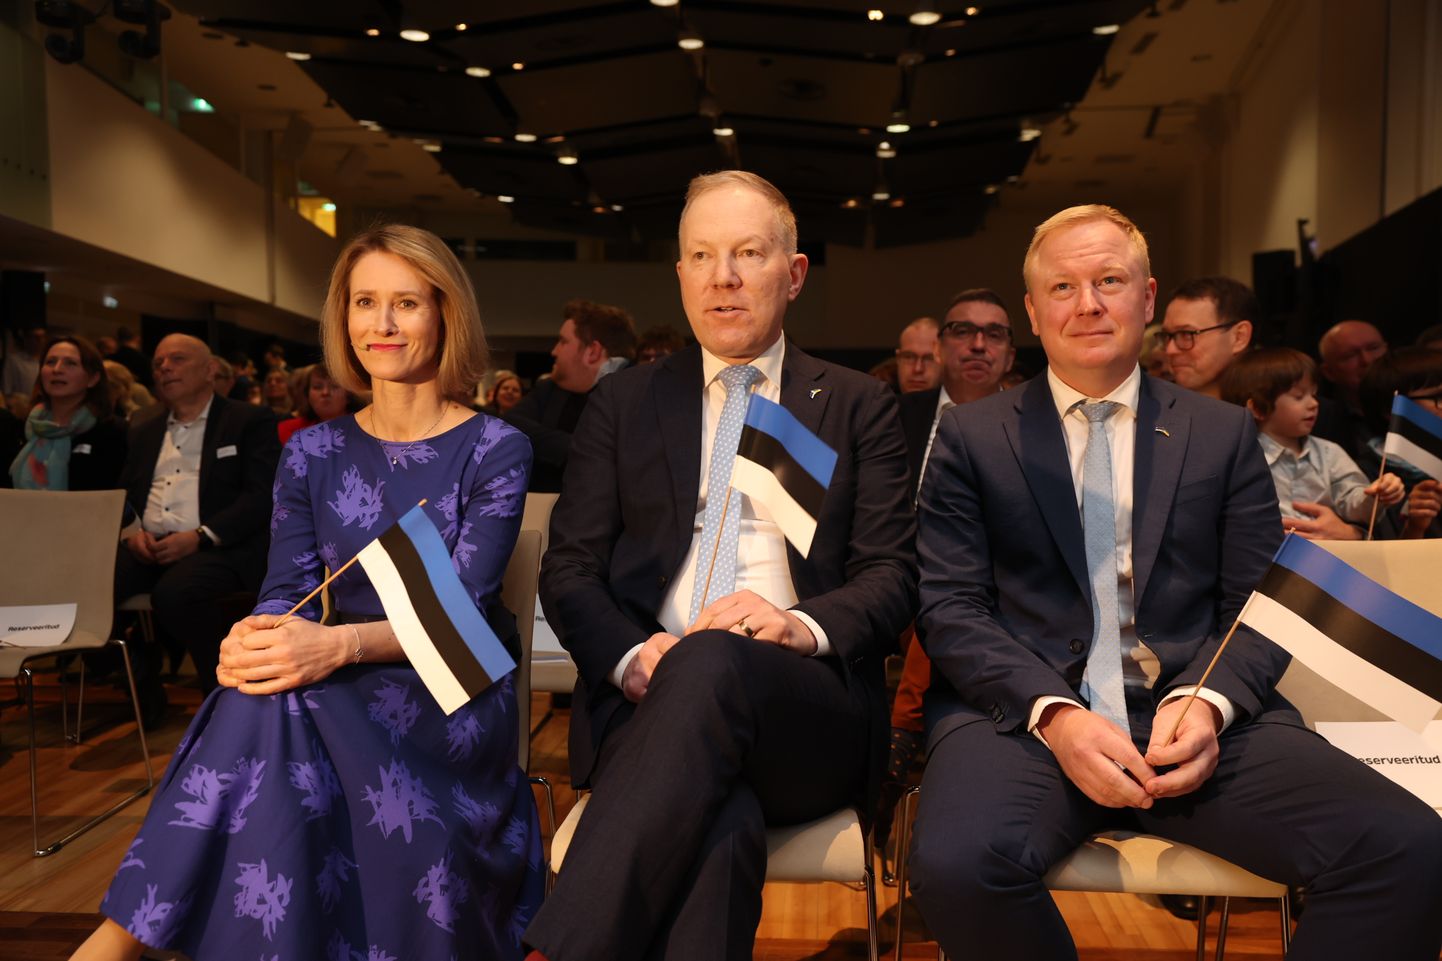 Nn maksuküüru kaotamise näol on tegu Reformierakonna valmislubadusega. Pildil peaminister Kaja Kallas, Marko Mihkelson ja rahandusminister Mart Võrklaev.